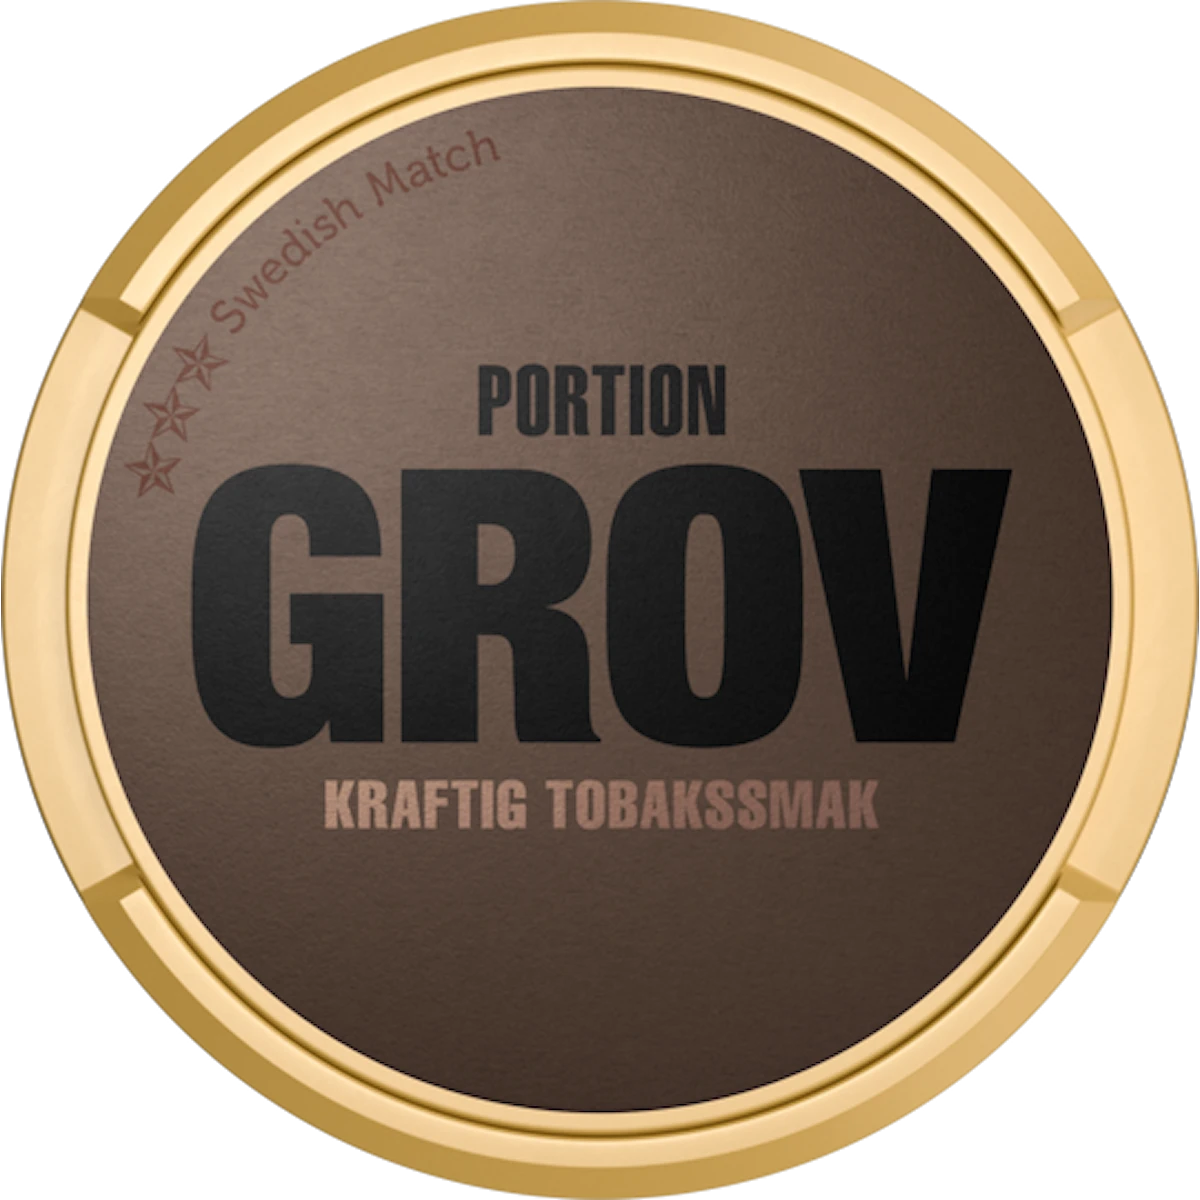 Grov Original Portion - Senaste produktionen